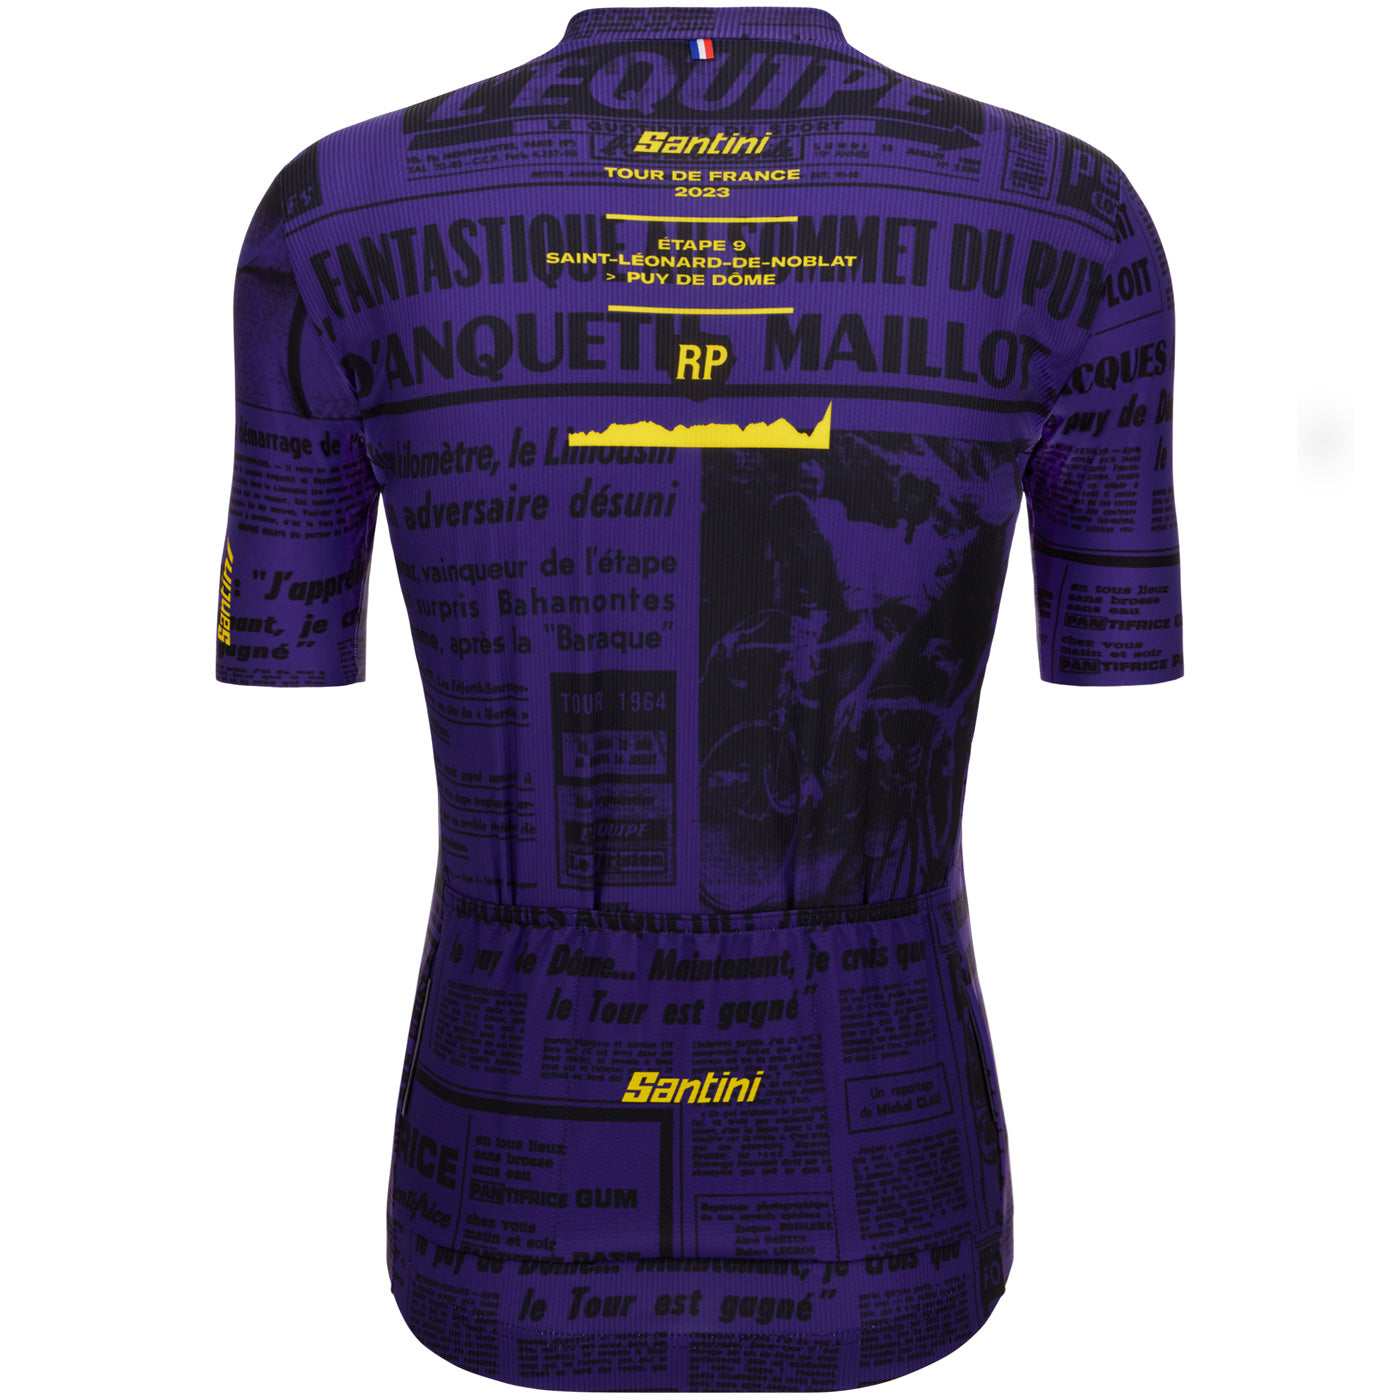 Tour de France jersey - Puy de Dome